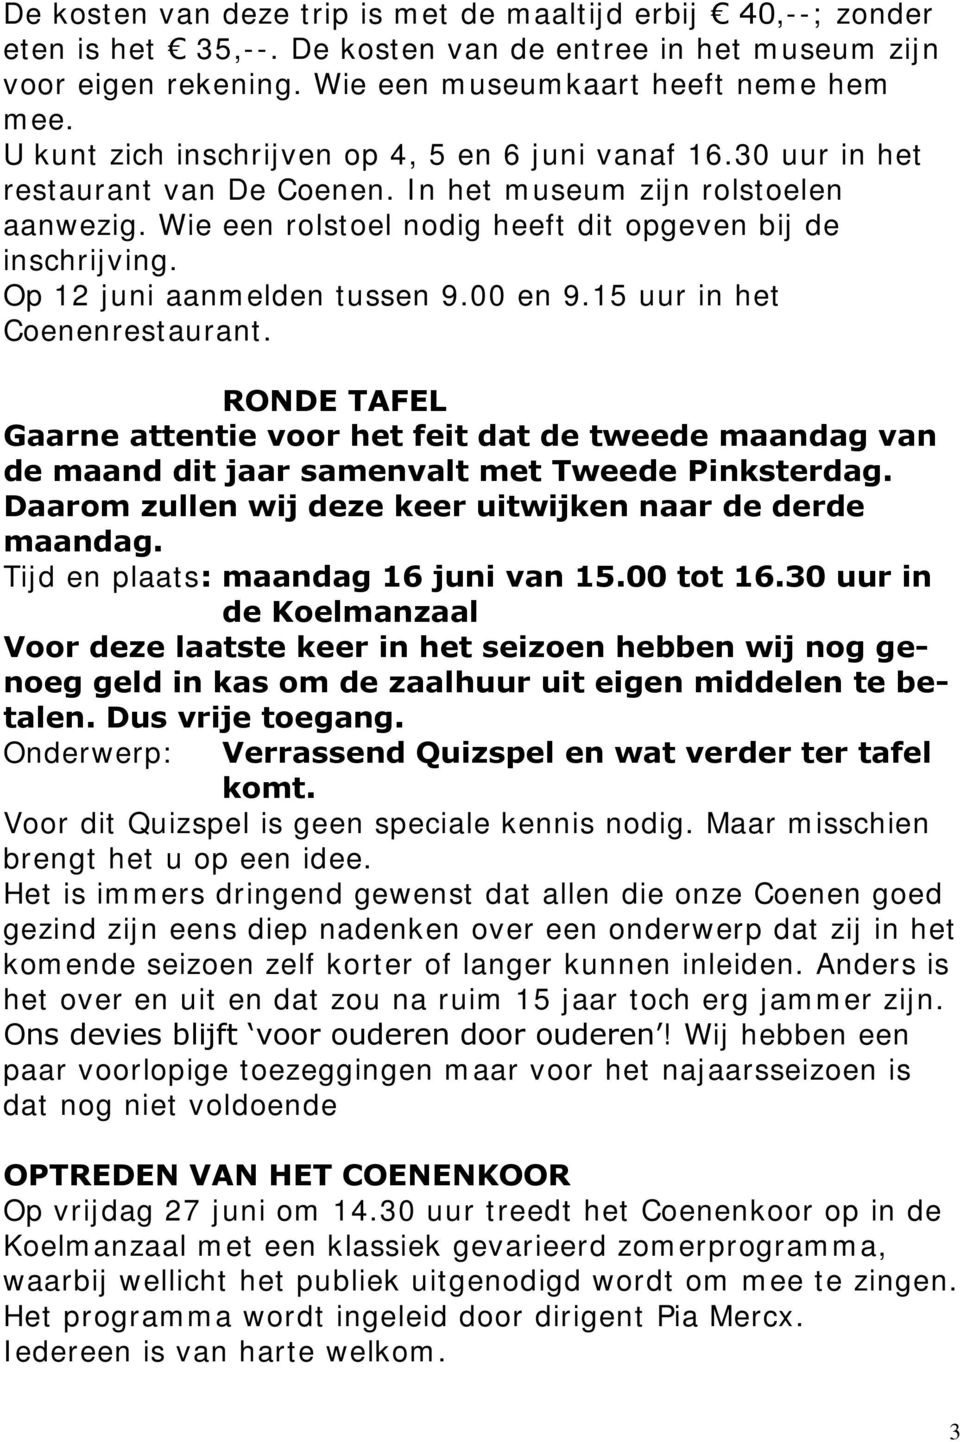 Op 12 juni aanmelden tussen 9.00 en 9.15 uur in het Coenenrestaurant. RONDE TAFEL Gaarne attentie voor het feit dat de tweede maandag van de maand dit jaar samenvalt met Tweede Pinksterdag.